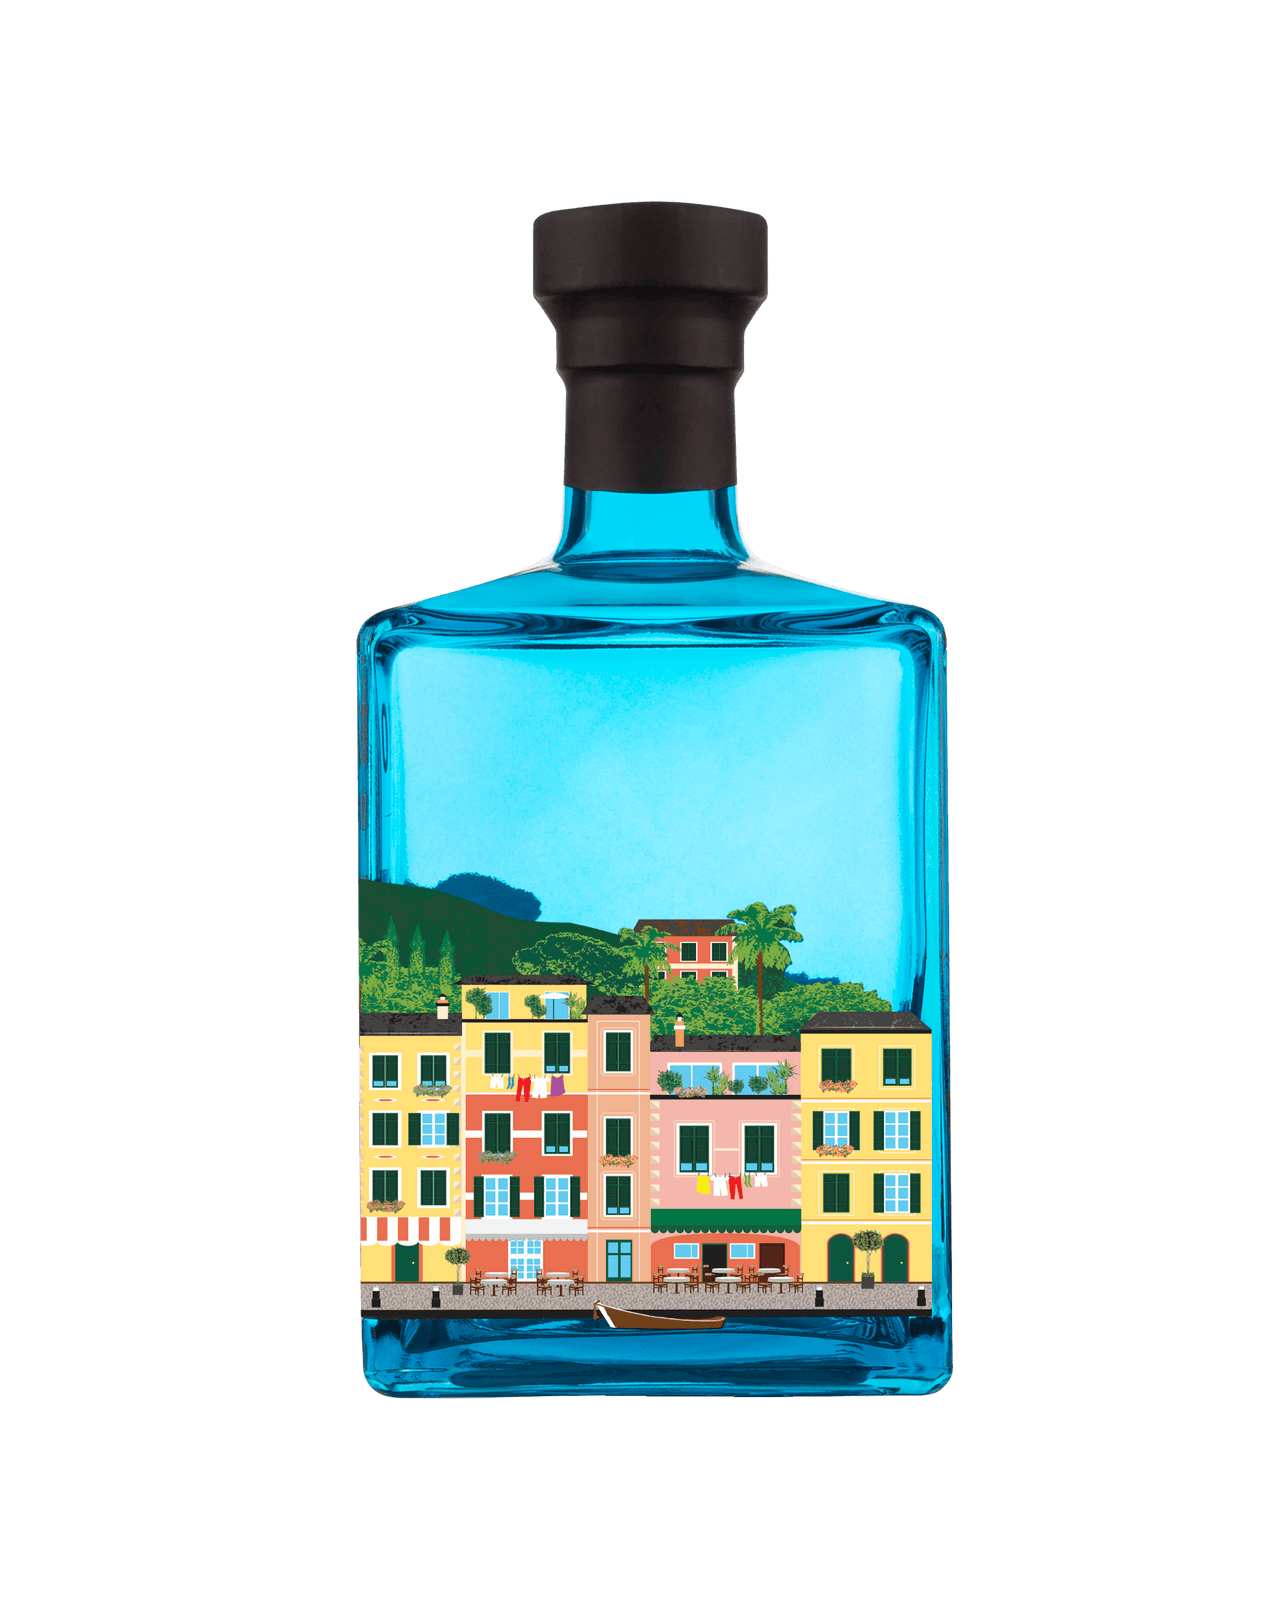 PORTOFINO DRY GIN MAGNUM - Portofino Dry Gin